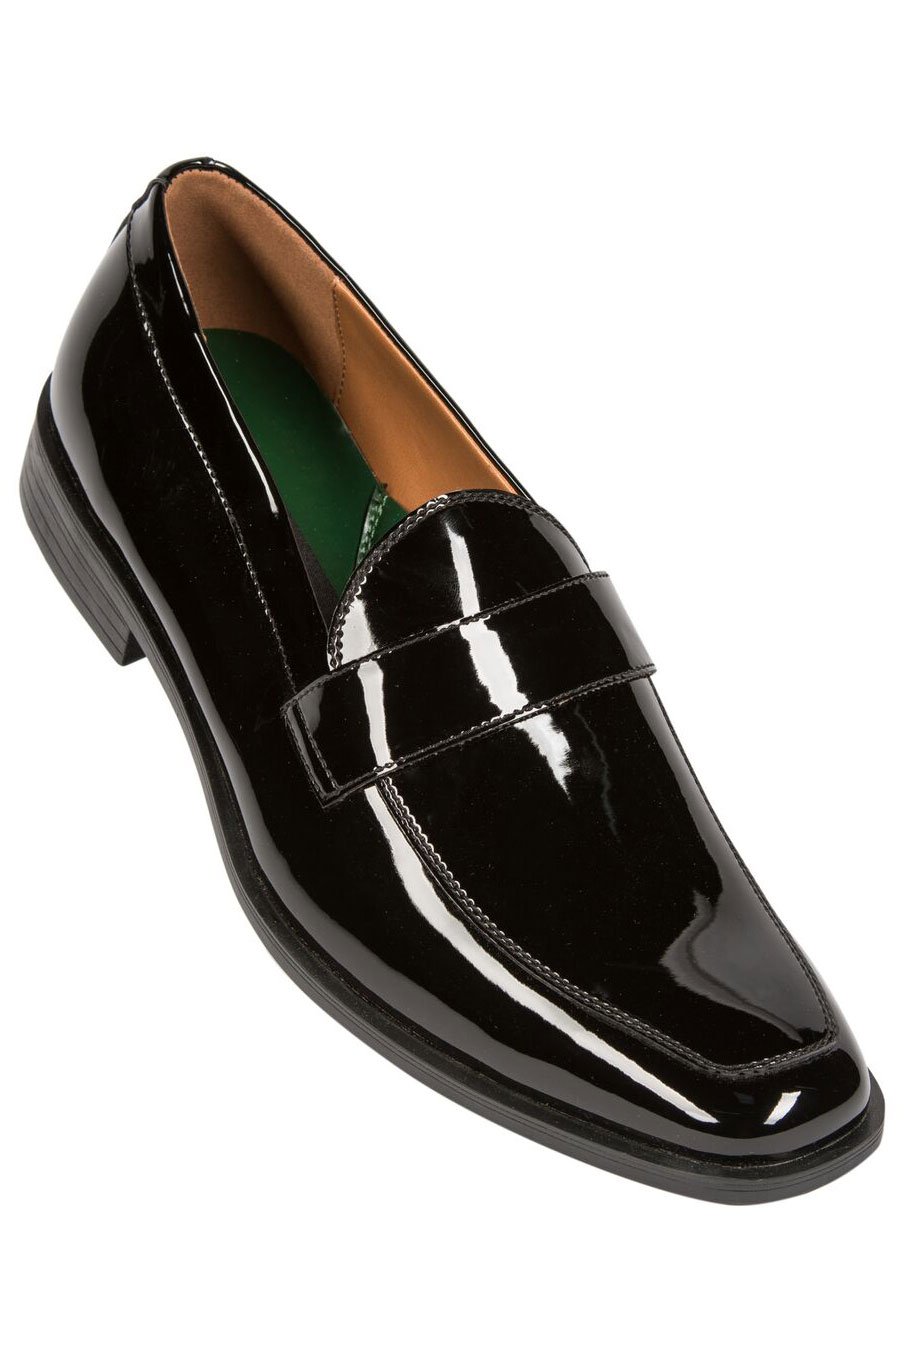 Frederico Leone "Miami" Black Frederico Leone Tuxedo Shoes